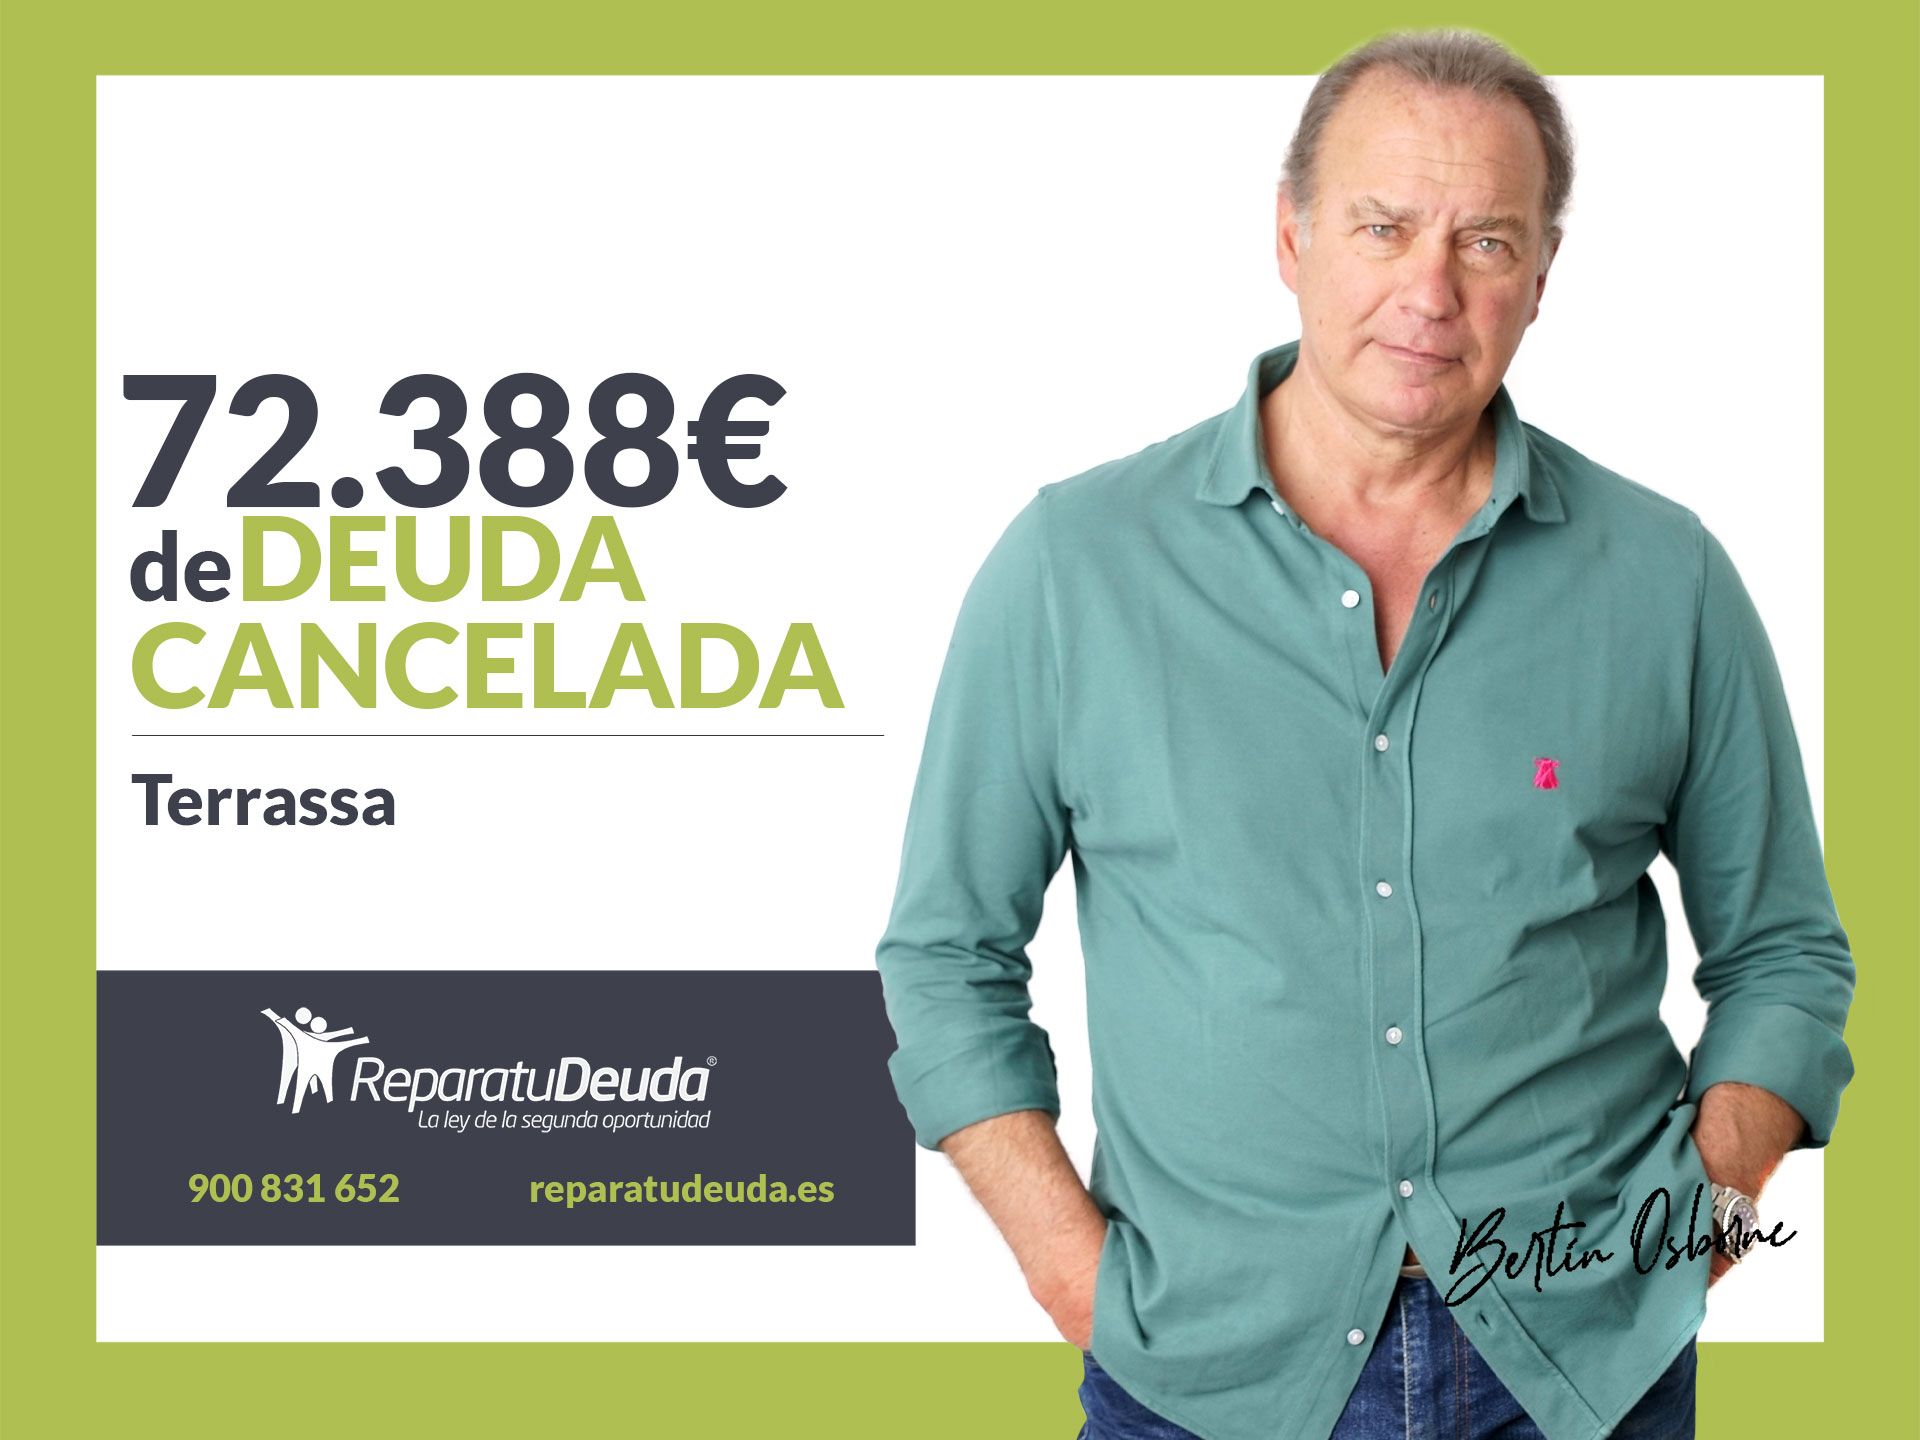 Repara tu Deuda Abogados cancela 72.388 ? en Terrassa (Barcelona) con la Ley de Segunda Oportunidad